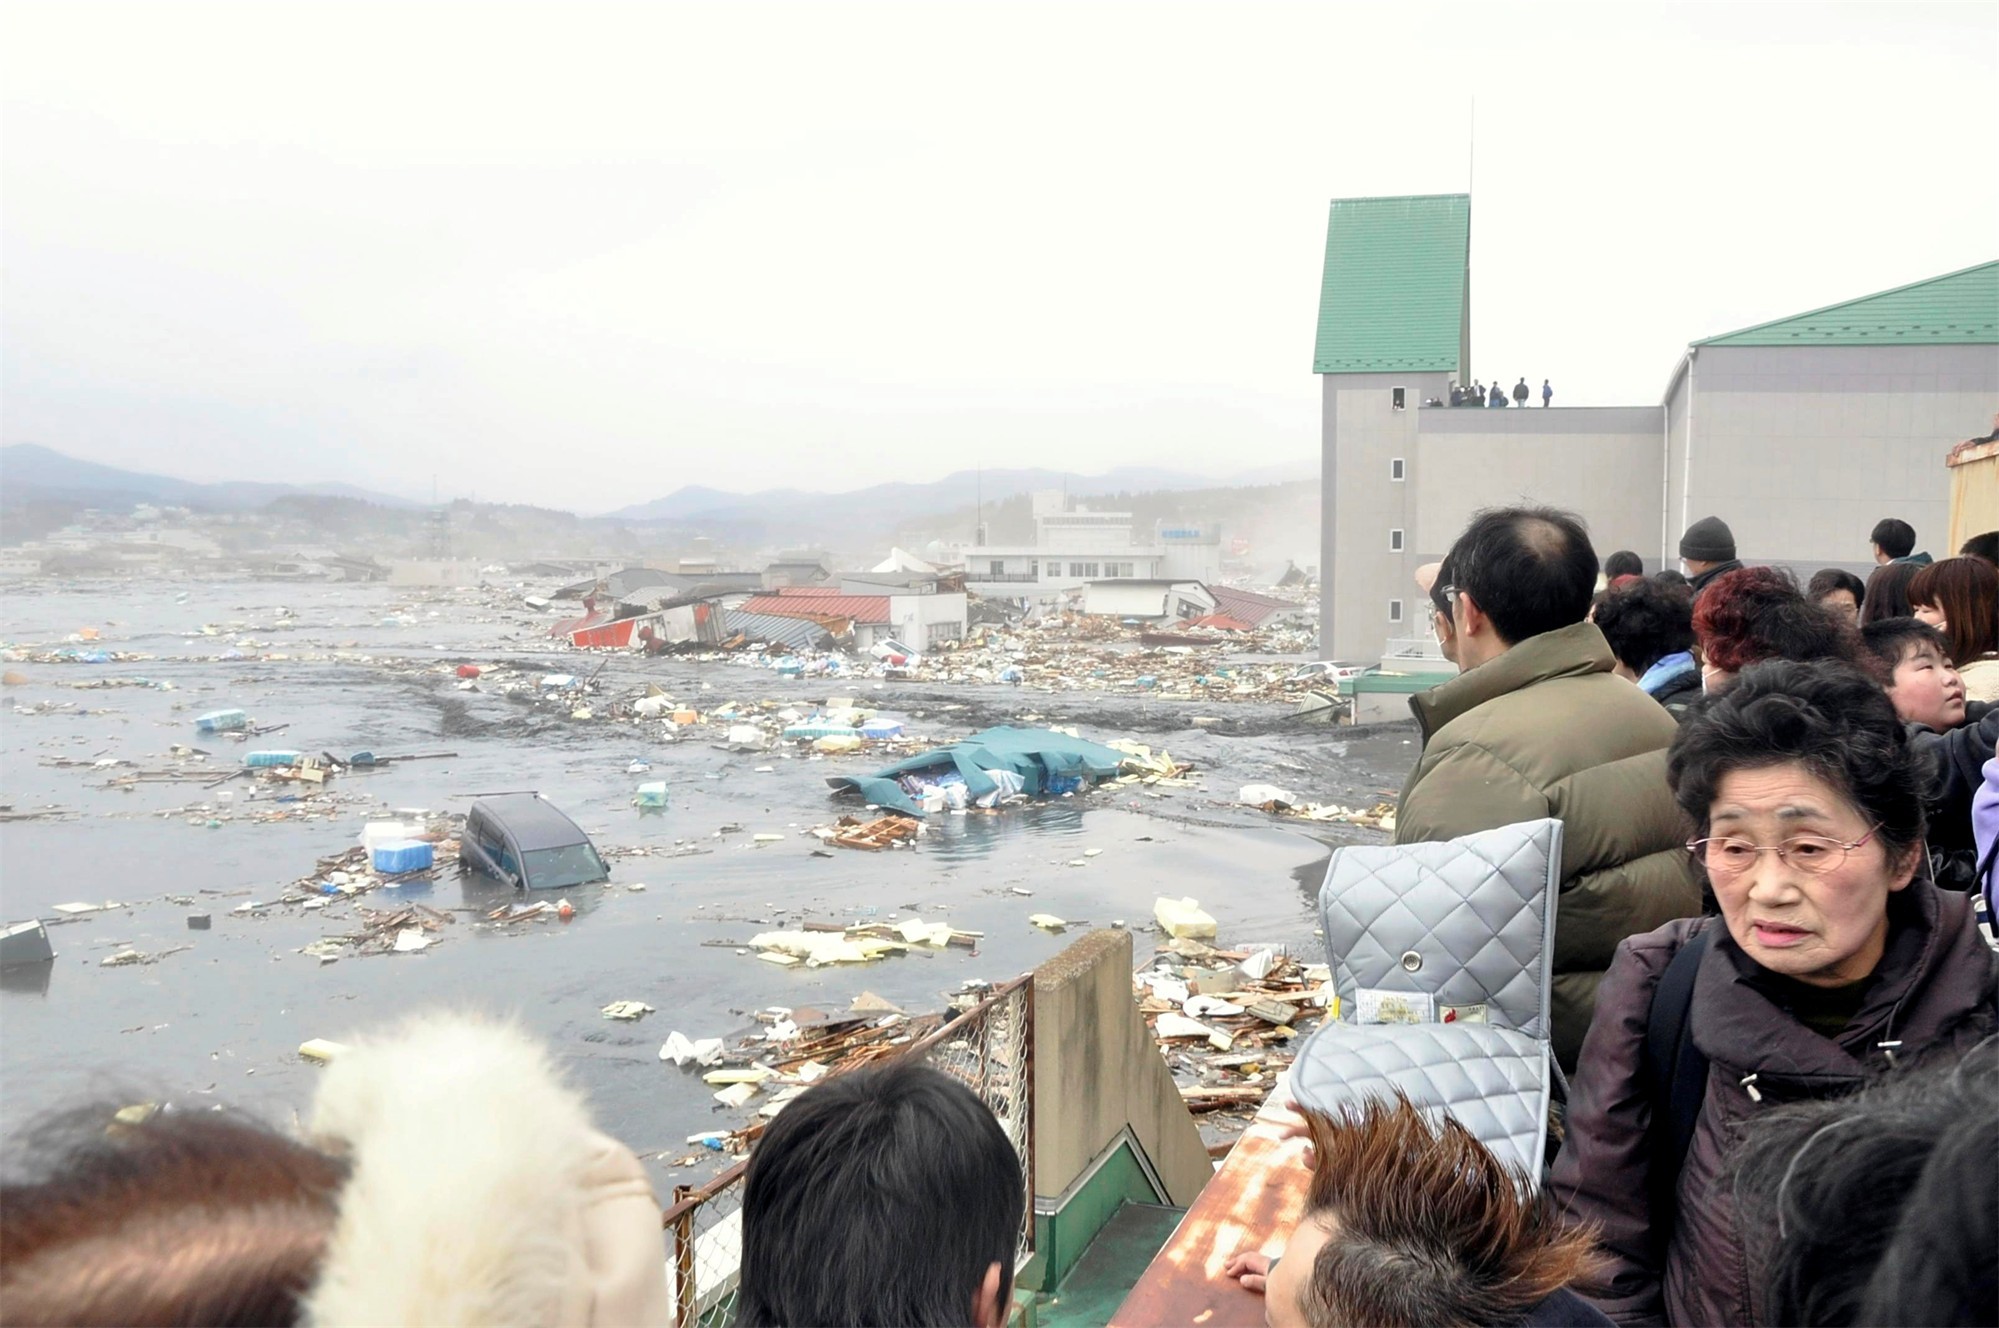 Землетрясение цунами. ЦУНАМИ В Японии в 2011. Япония 2011 землетрясение и ЦУНАМИ. Землетрясение Тохоку 2011.